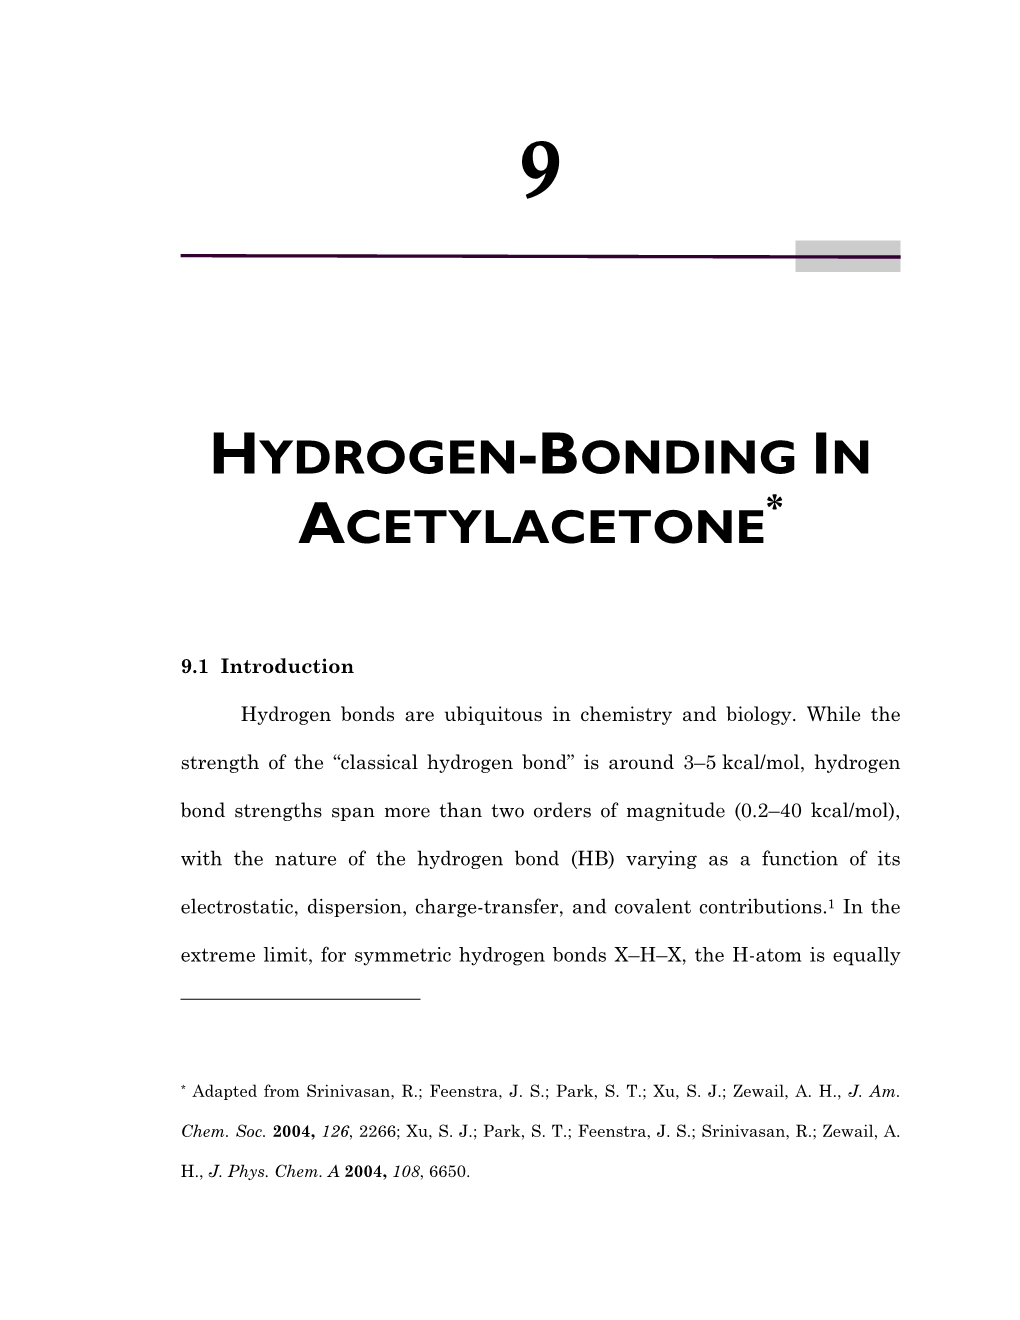 Hydrogen-Bonding in Acetylacetone*